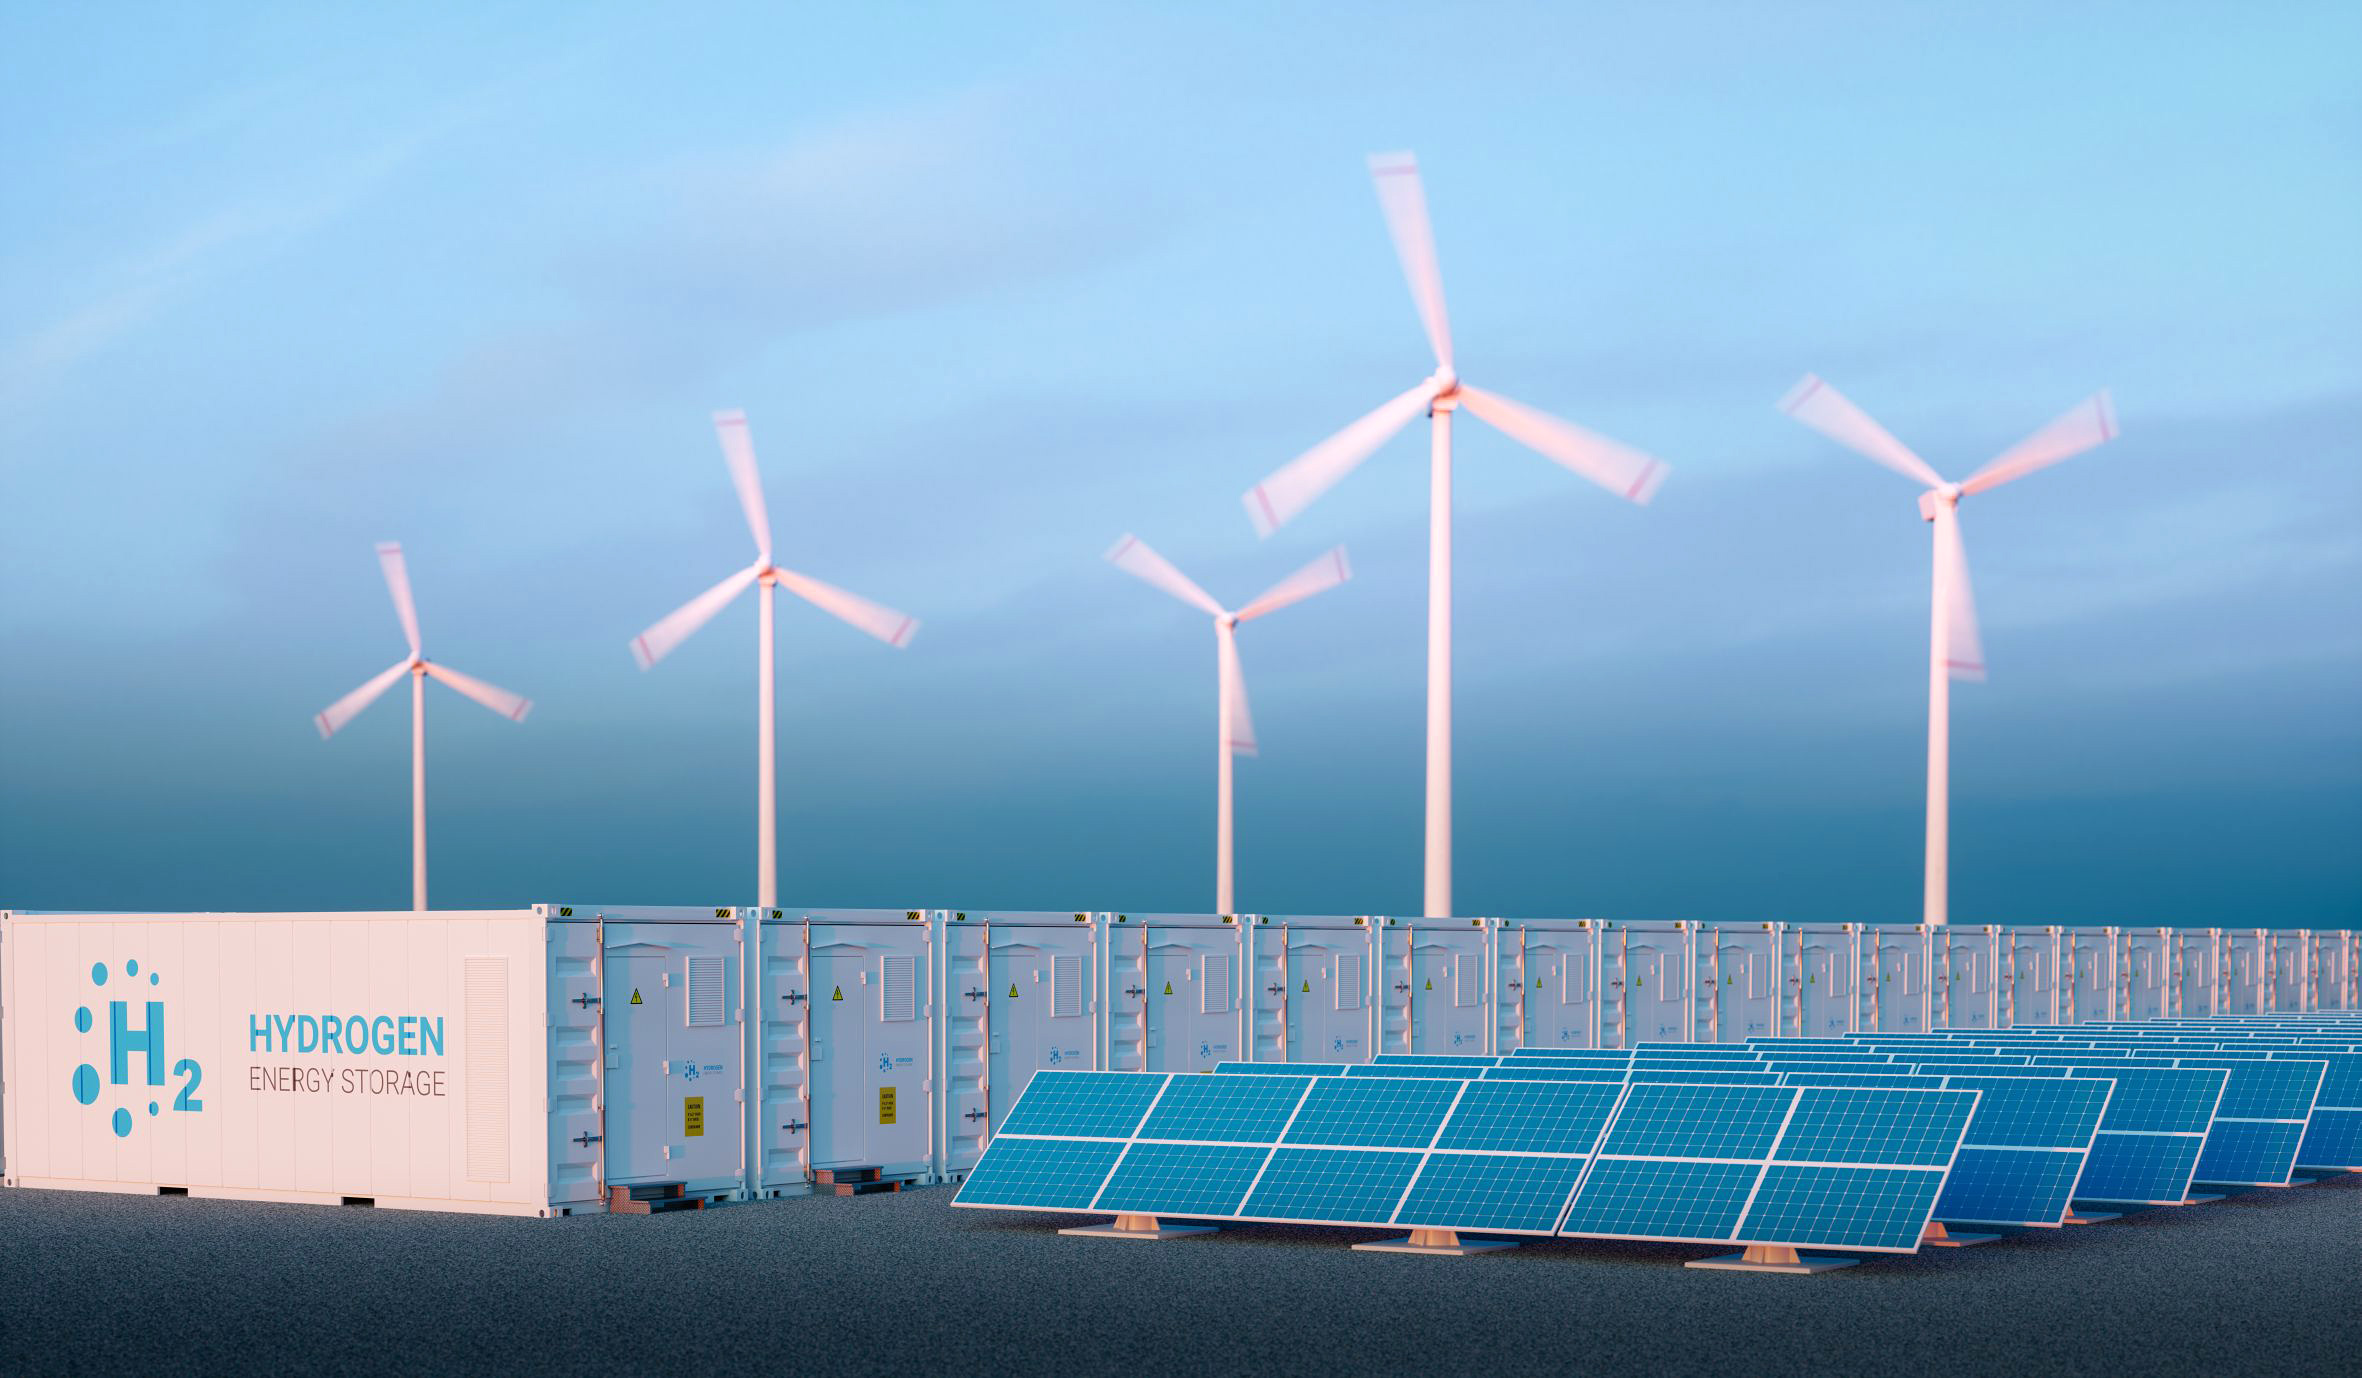 Symbolbild: Gewinnung von grünem Wasserstoff. Im Vordergrund Solarzellen, dahinter Container zur Speicherung von Wasserstoff, im Hintergrund Windkraftanlagen mit drehenden Rotoren